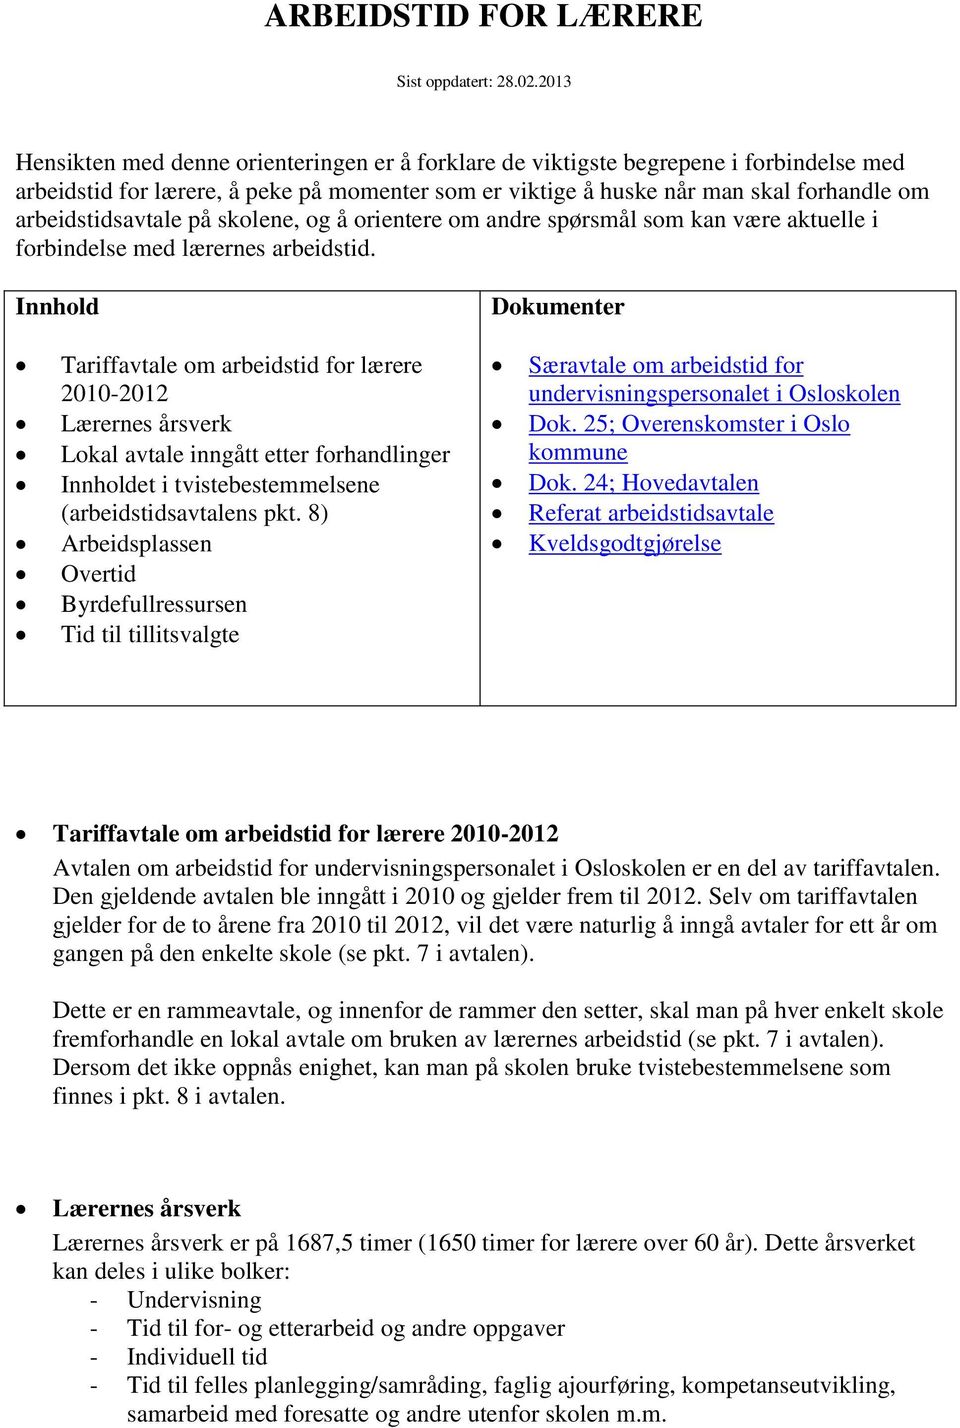 ARBEIDSTID FOR LÆRERE - PDF Free Download